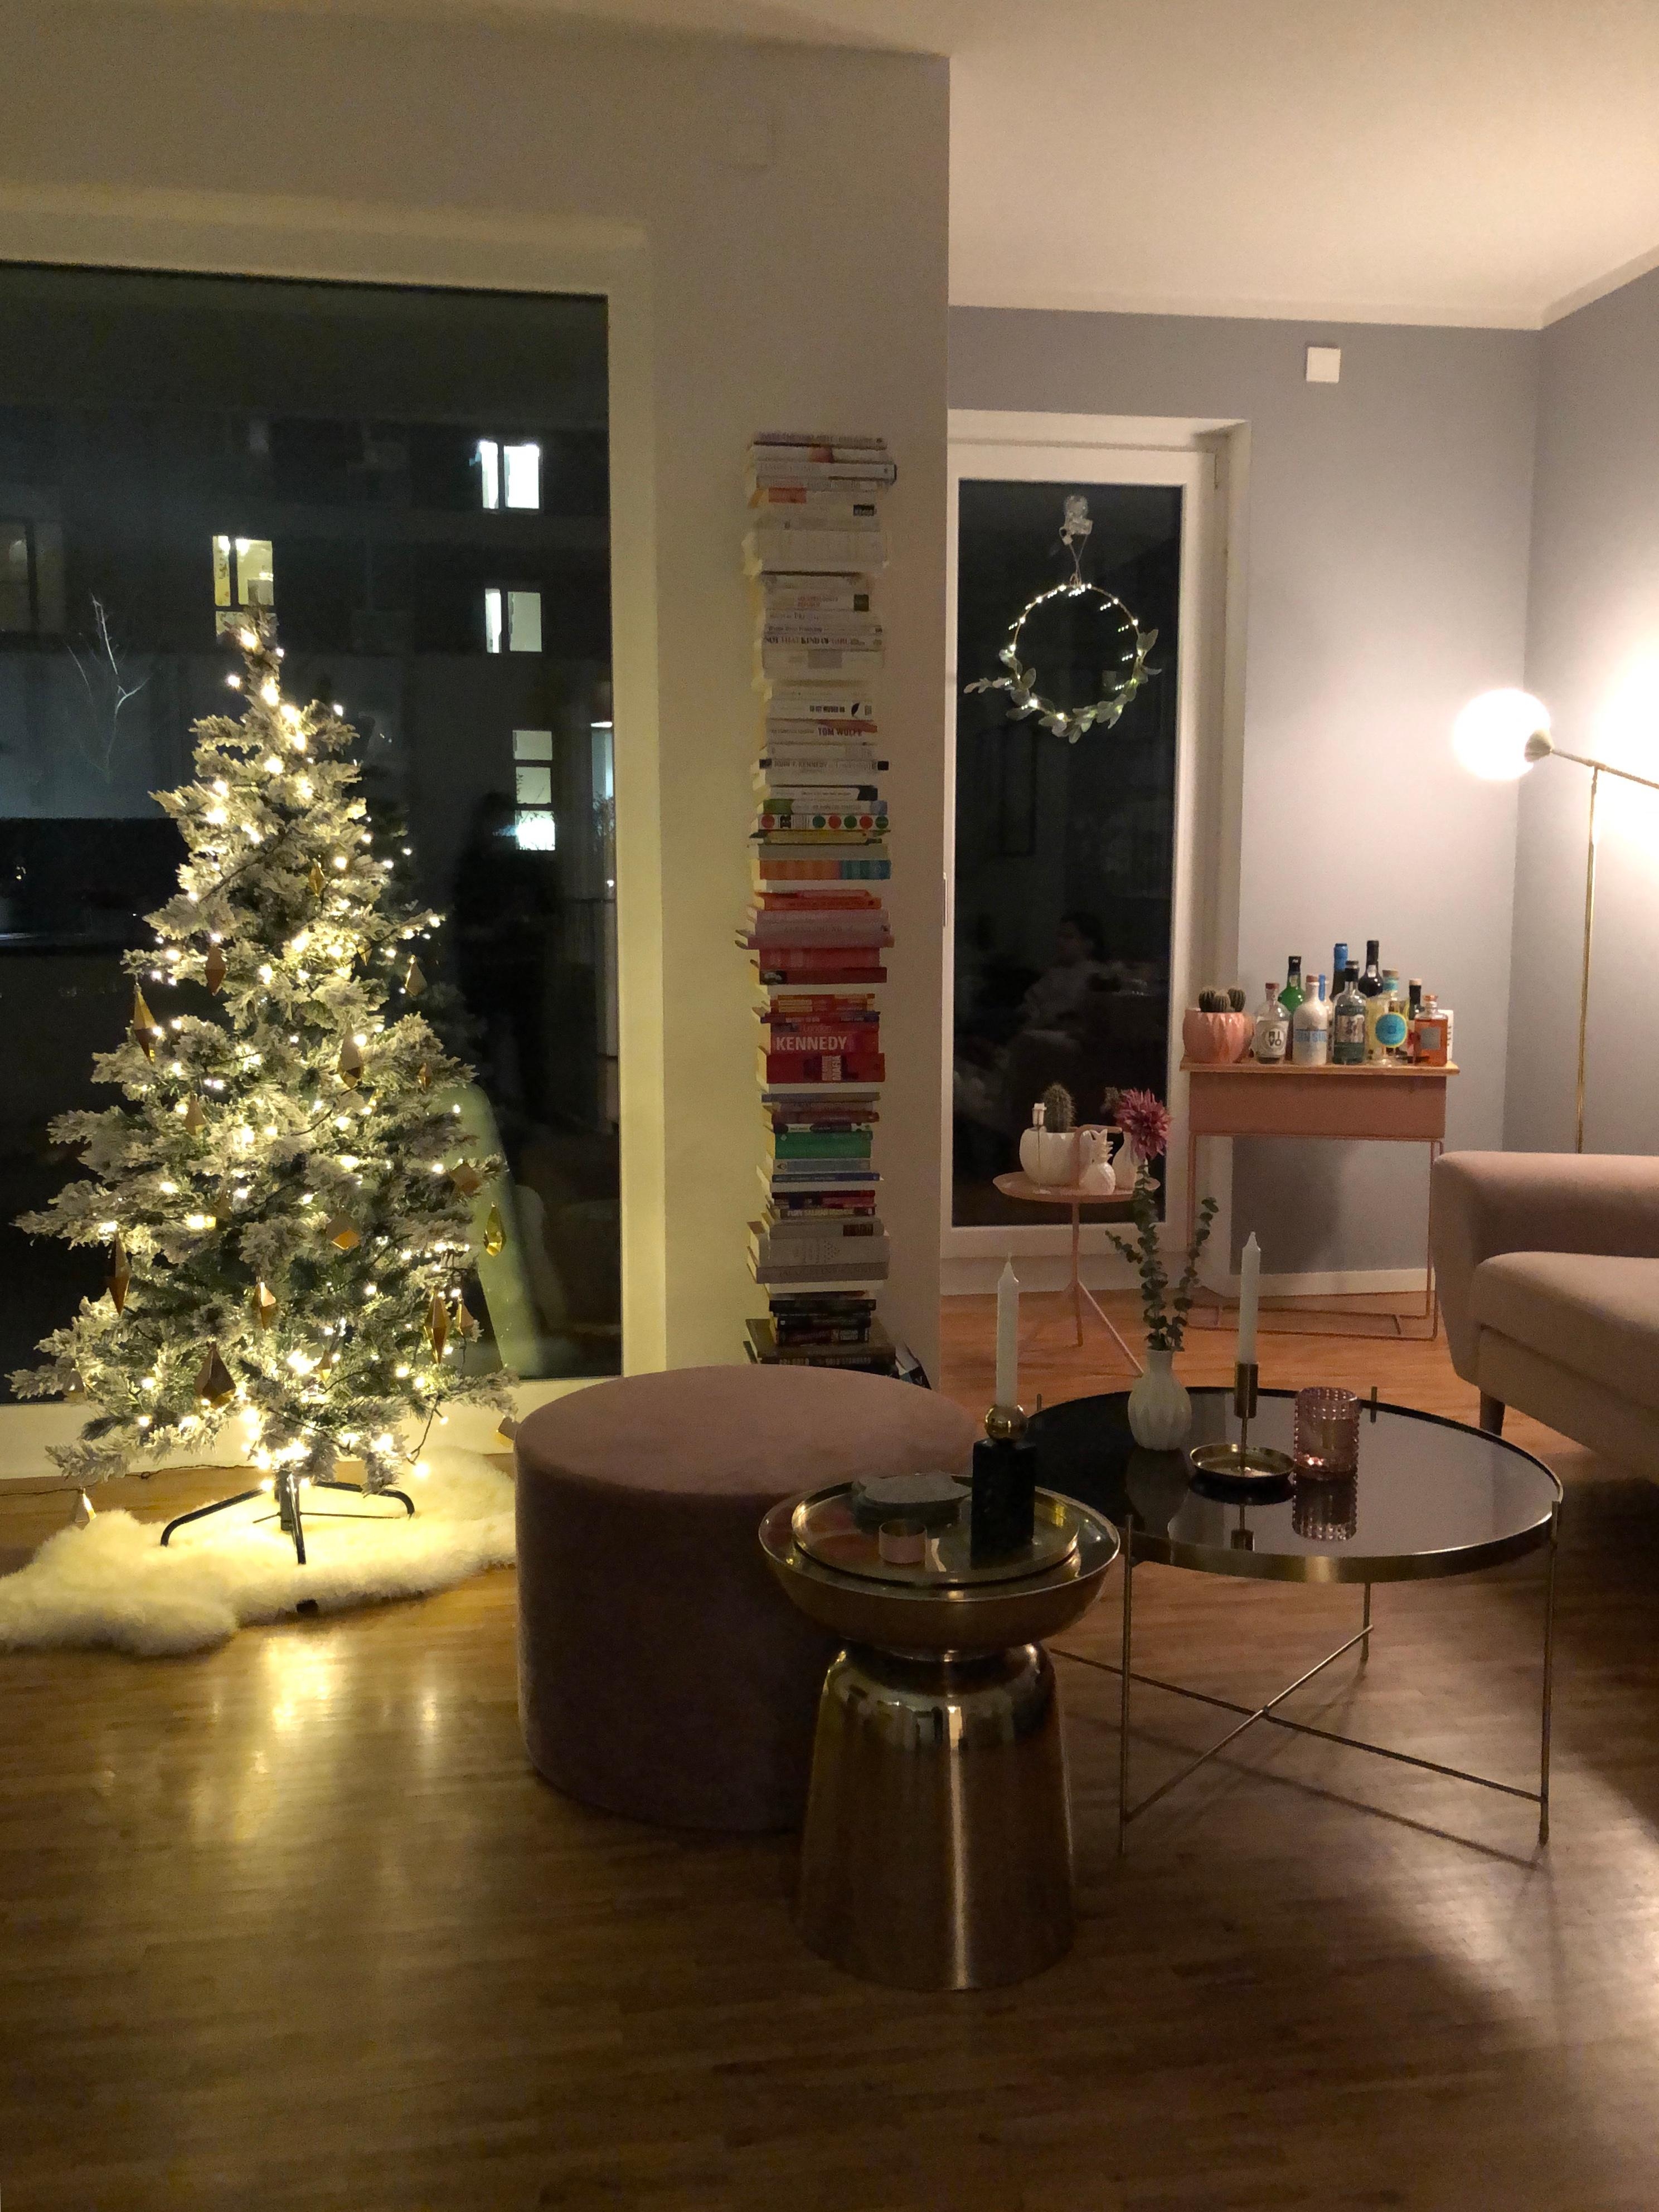 It’s beginning to look a lot like Christmas 🎄 #wohnzimmer #deko #weihnachten #xmas 